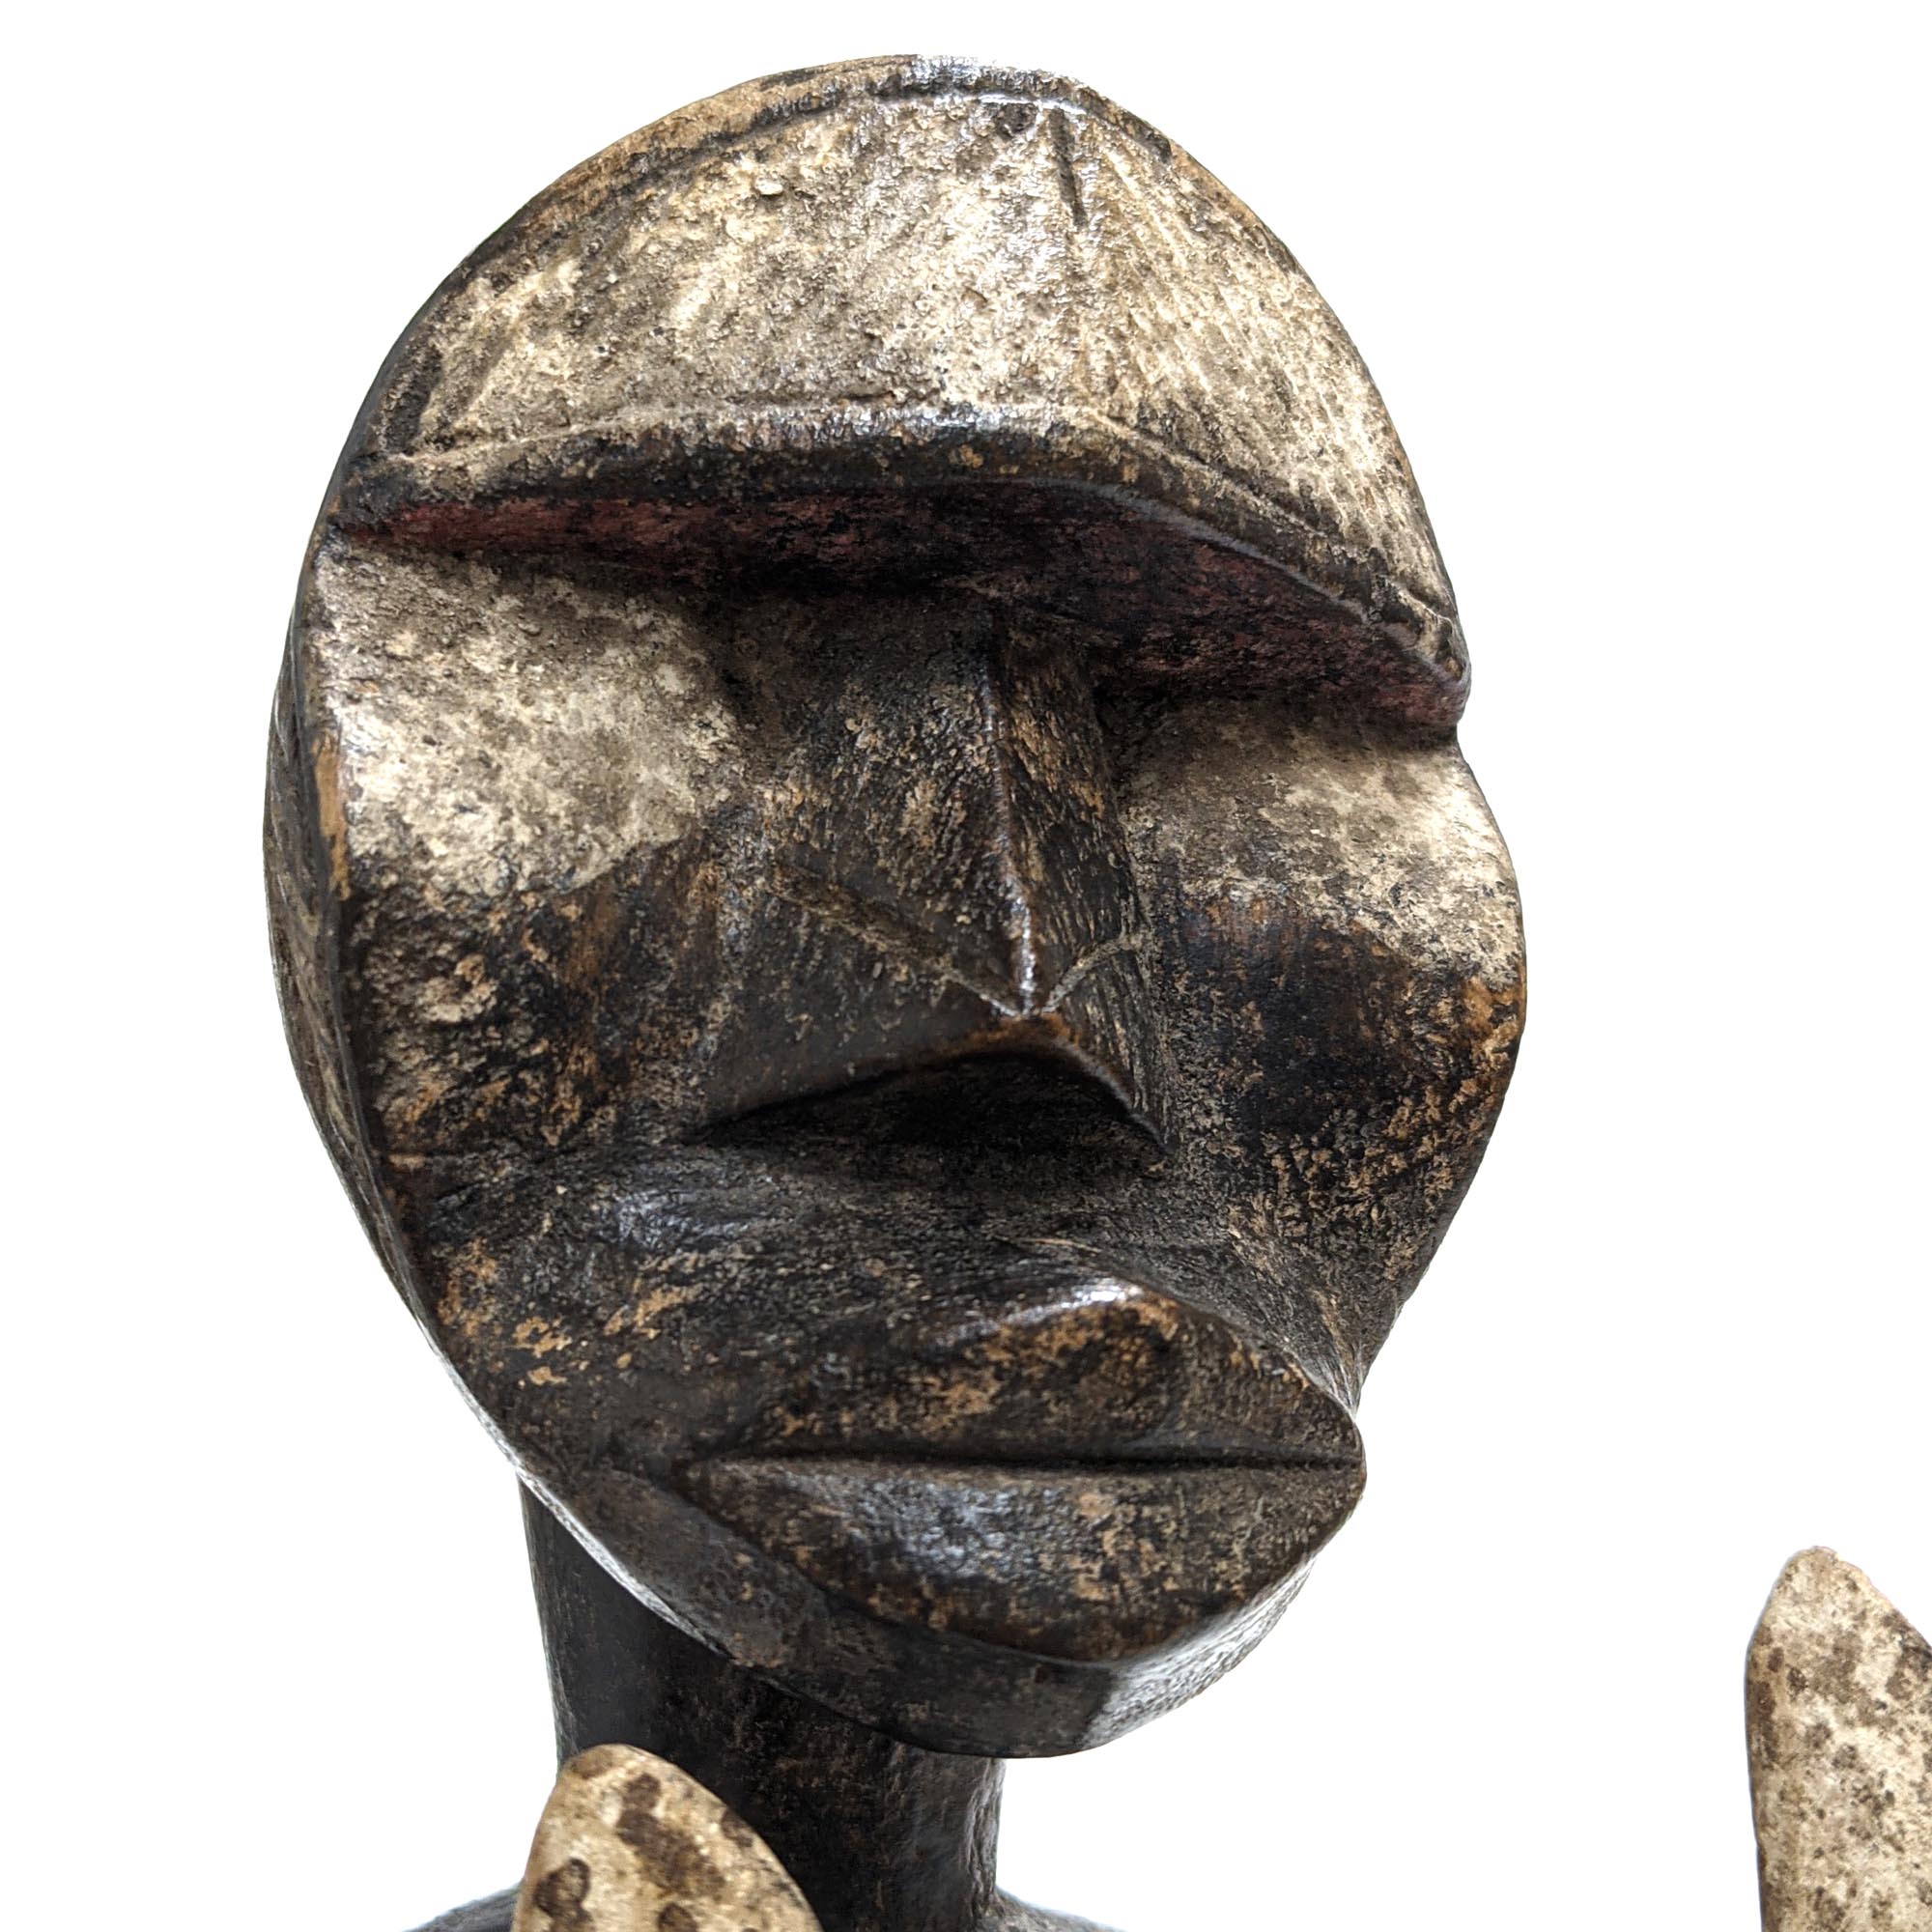 ウェ族戦士像 36cm アフリカ 人形 プリミティブアート 彫像 (c162-22) - アフリカ雑貨店 アフロモード